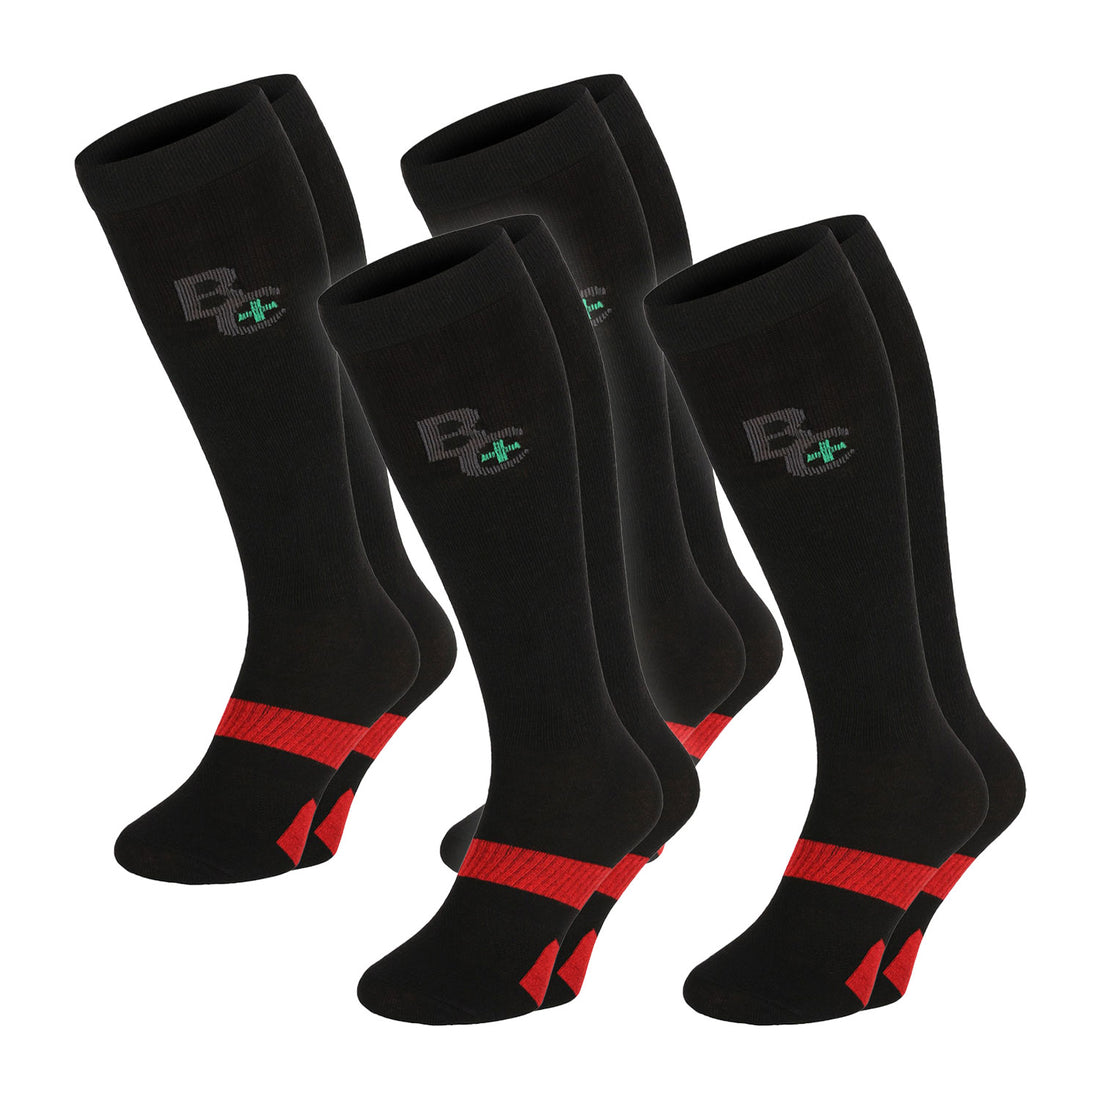 ChiliLifestyle Socken BestCare Compression Knie schwarz 4 Paar, Damen, Herren